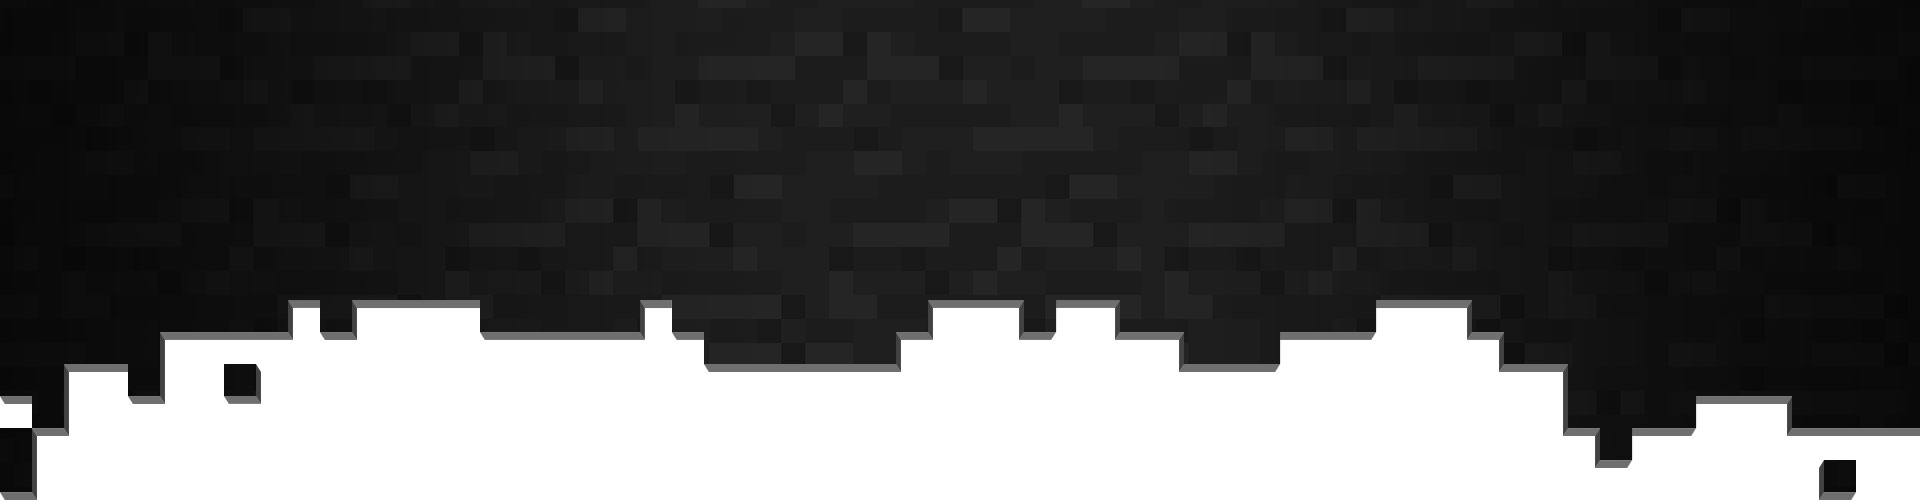 Pixels noirs et gris